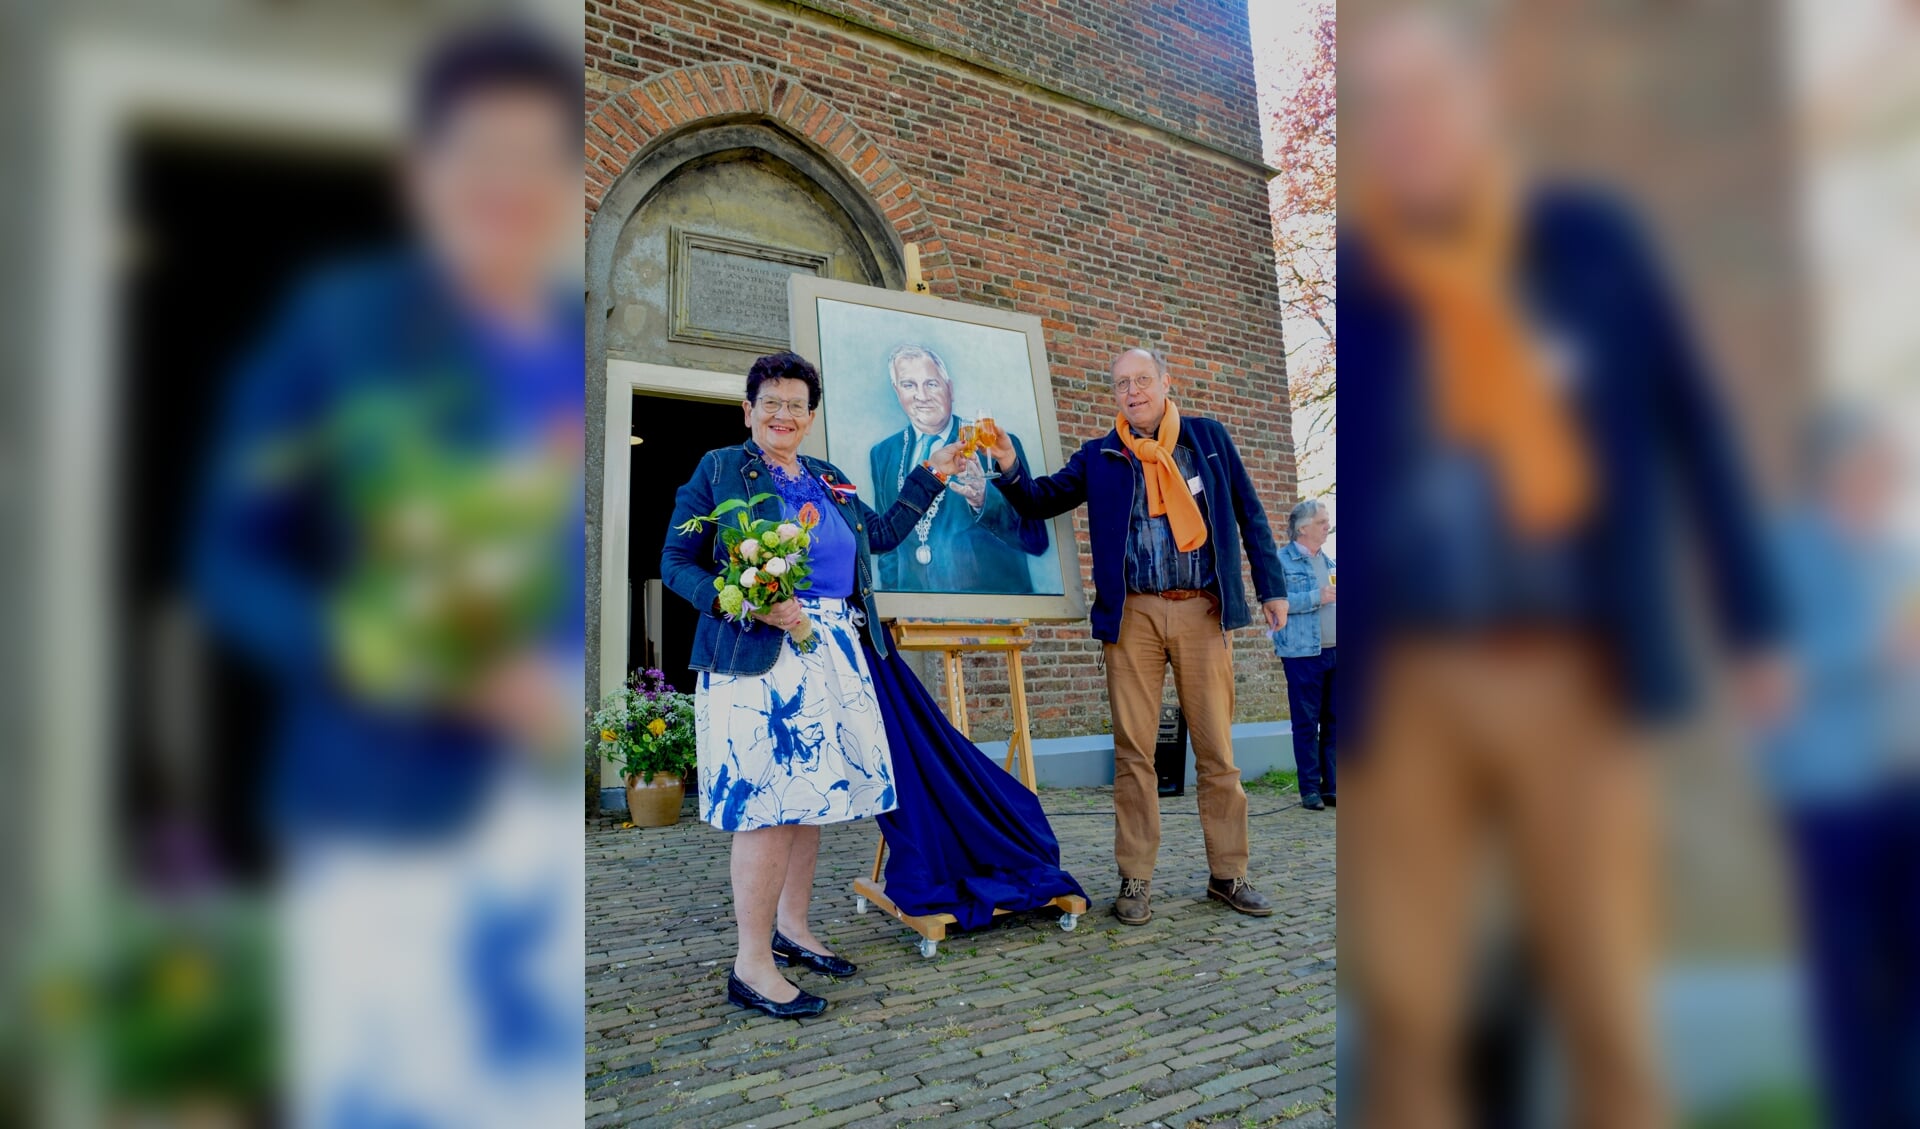 Wilma Aalderink en Menno Leistra proostten op een succesvolle expositie in de Steenderense Remigiuskerk. Foto: Jan Bijvank